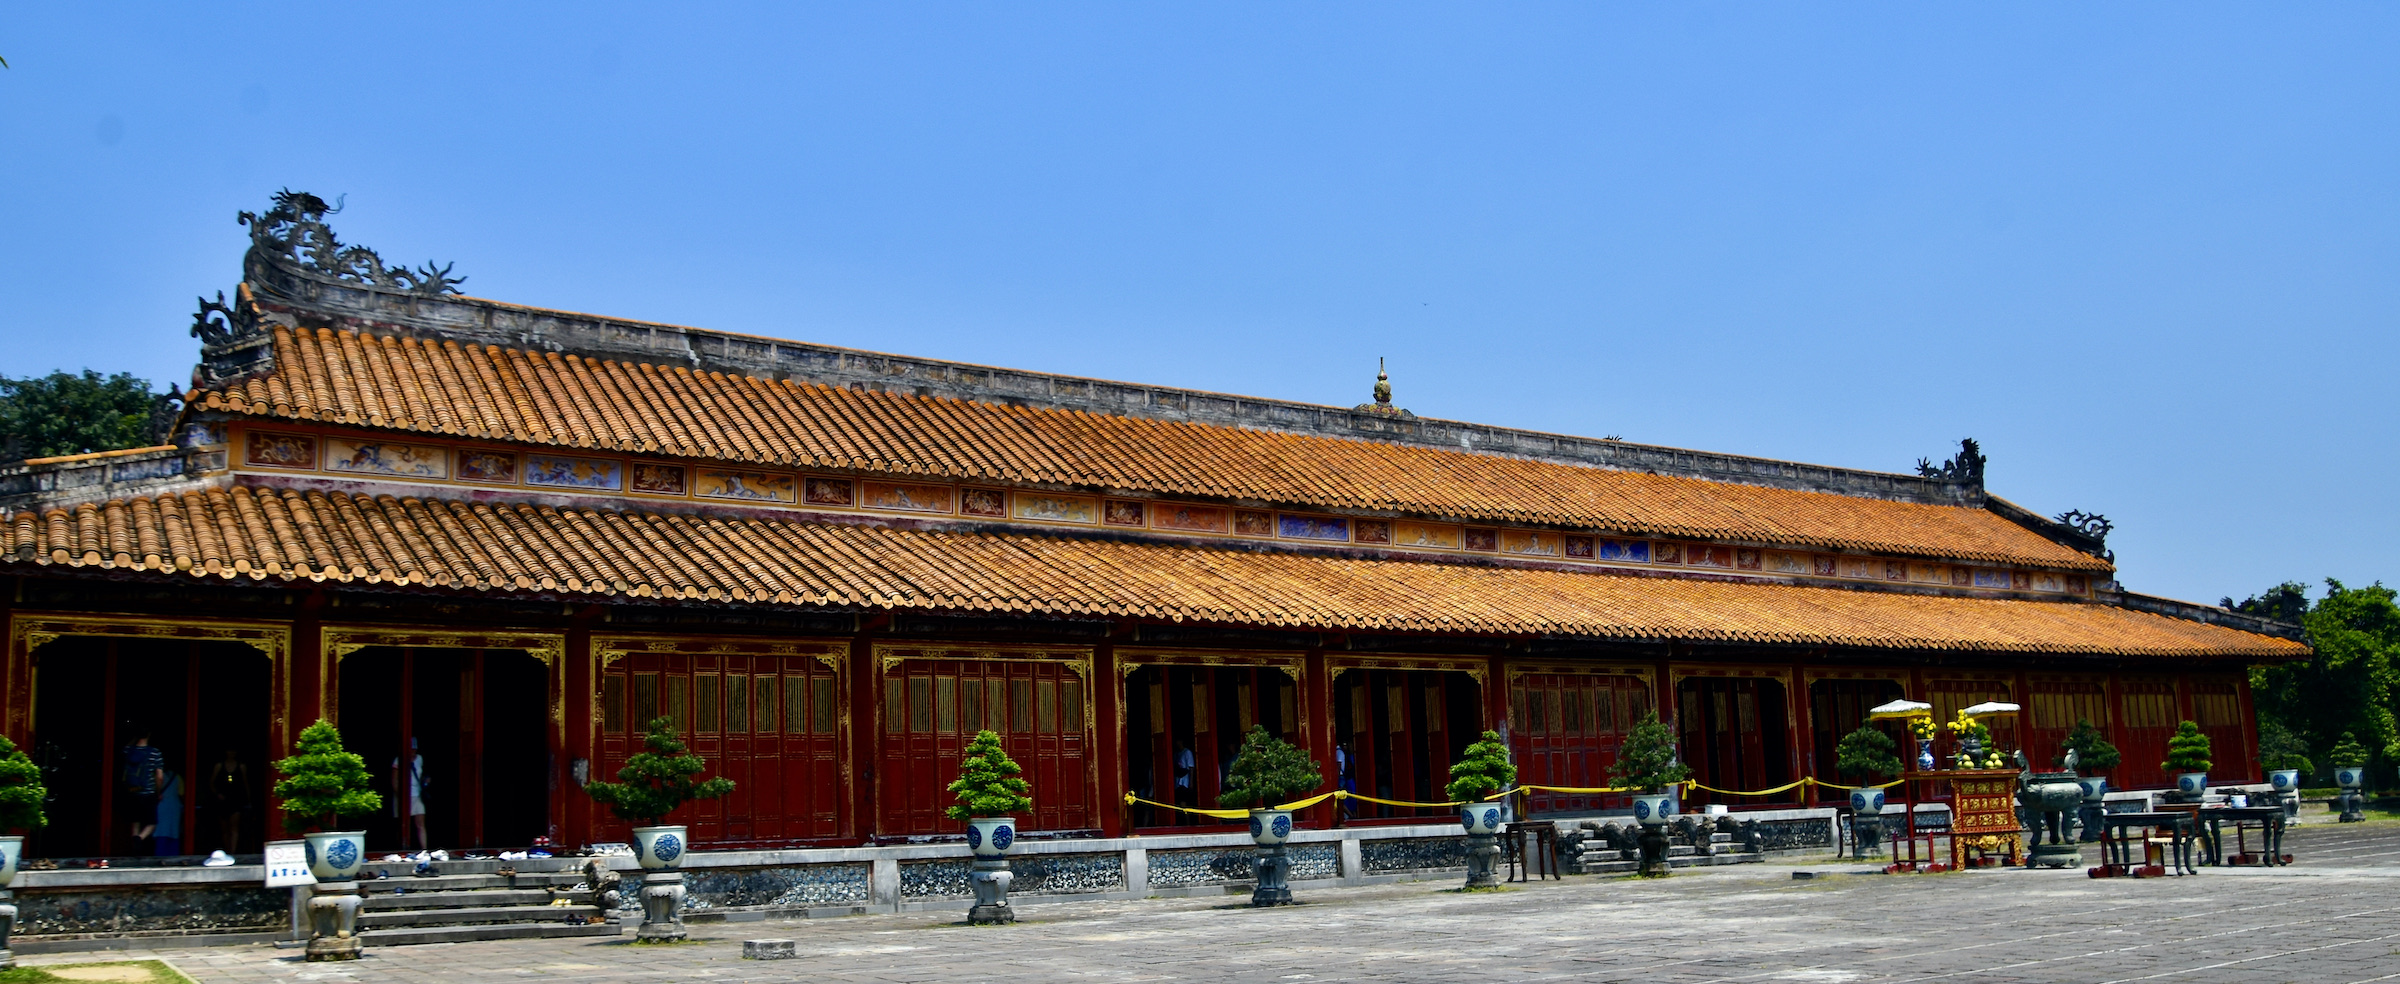 Thieu Temple, Hue Citadel